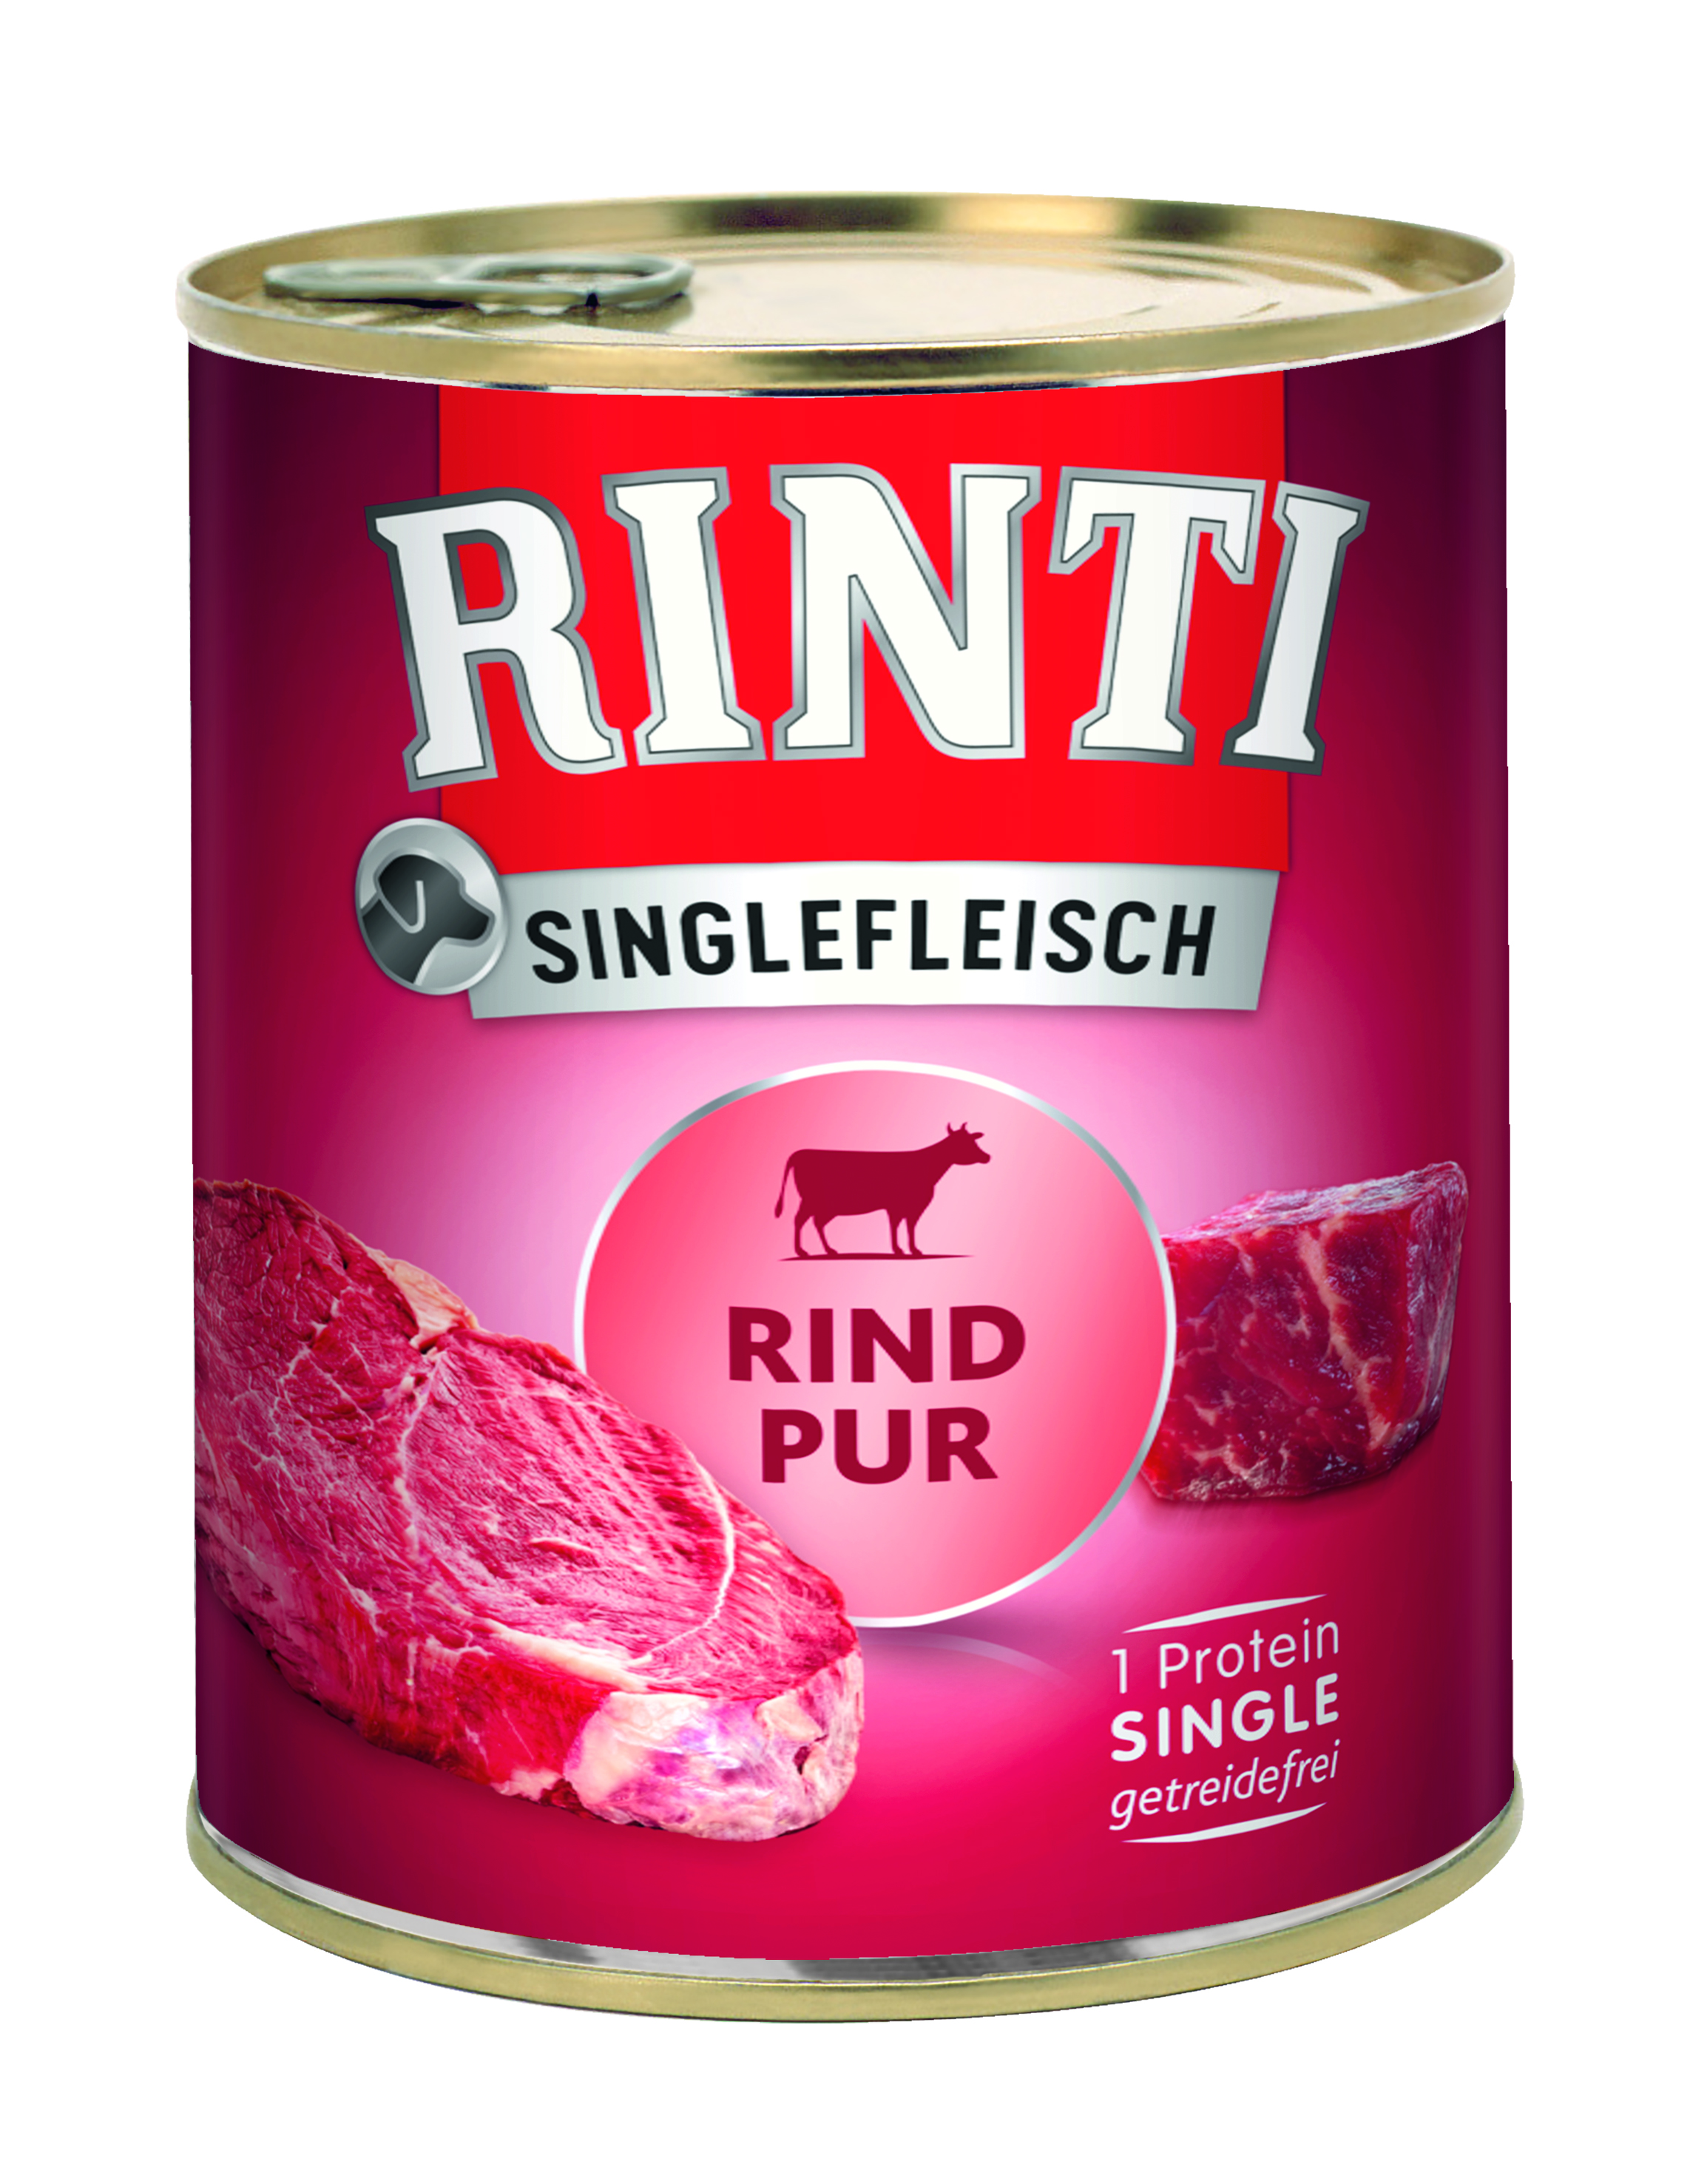 Rinti Singlefleisch Rind Pur 800g